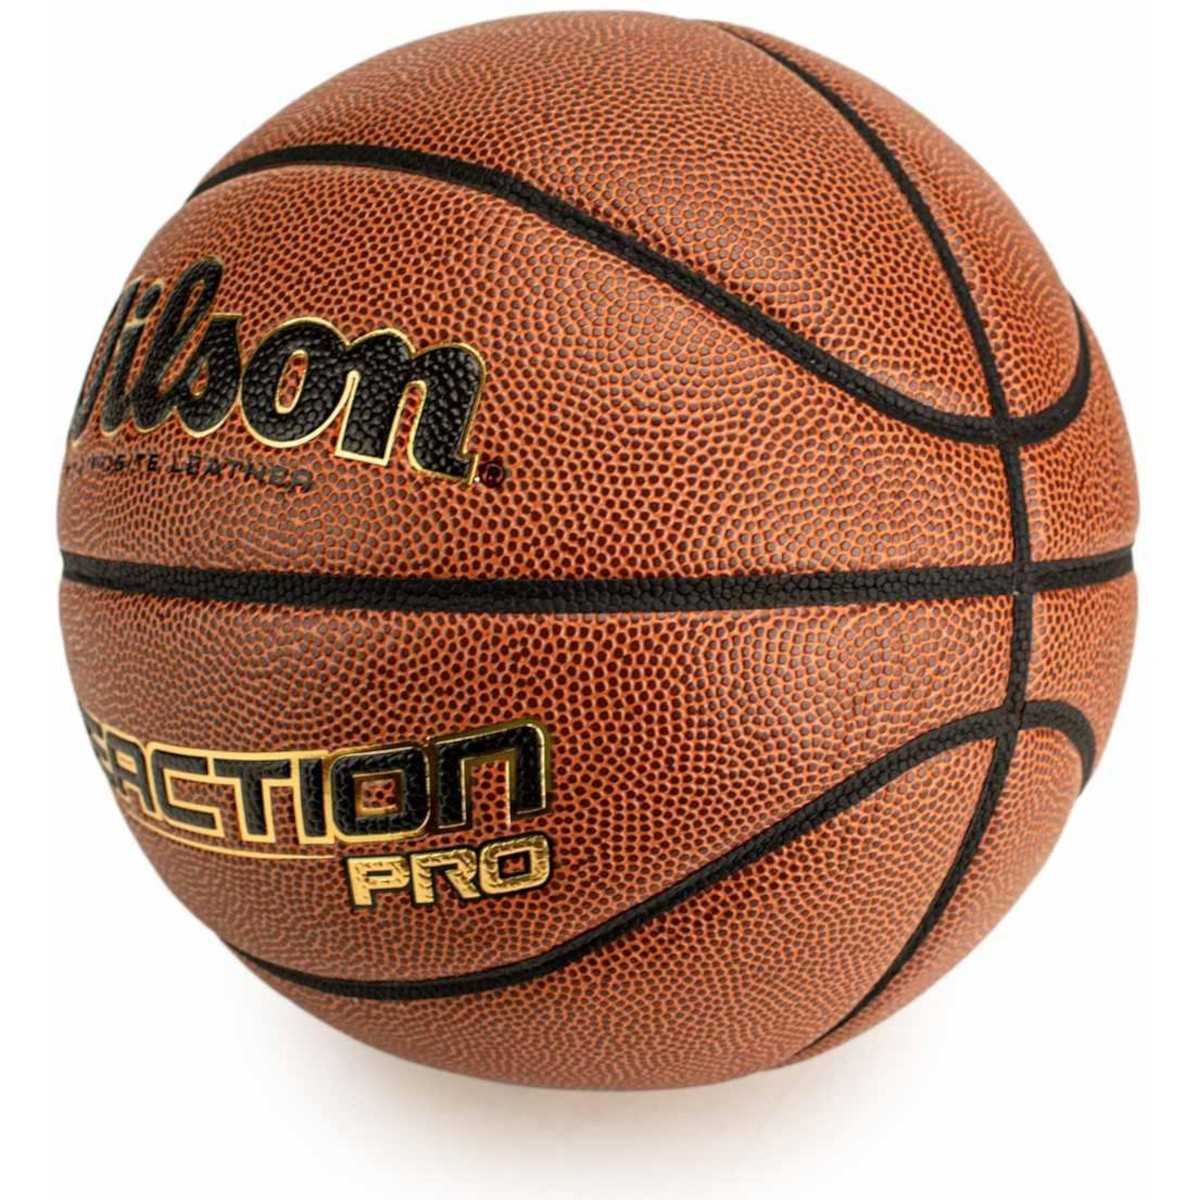 Wilson Reaction Pro krepšinio kamuolys, 7